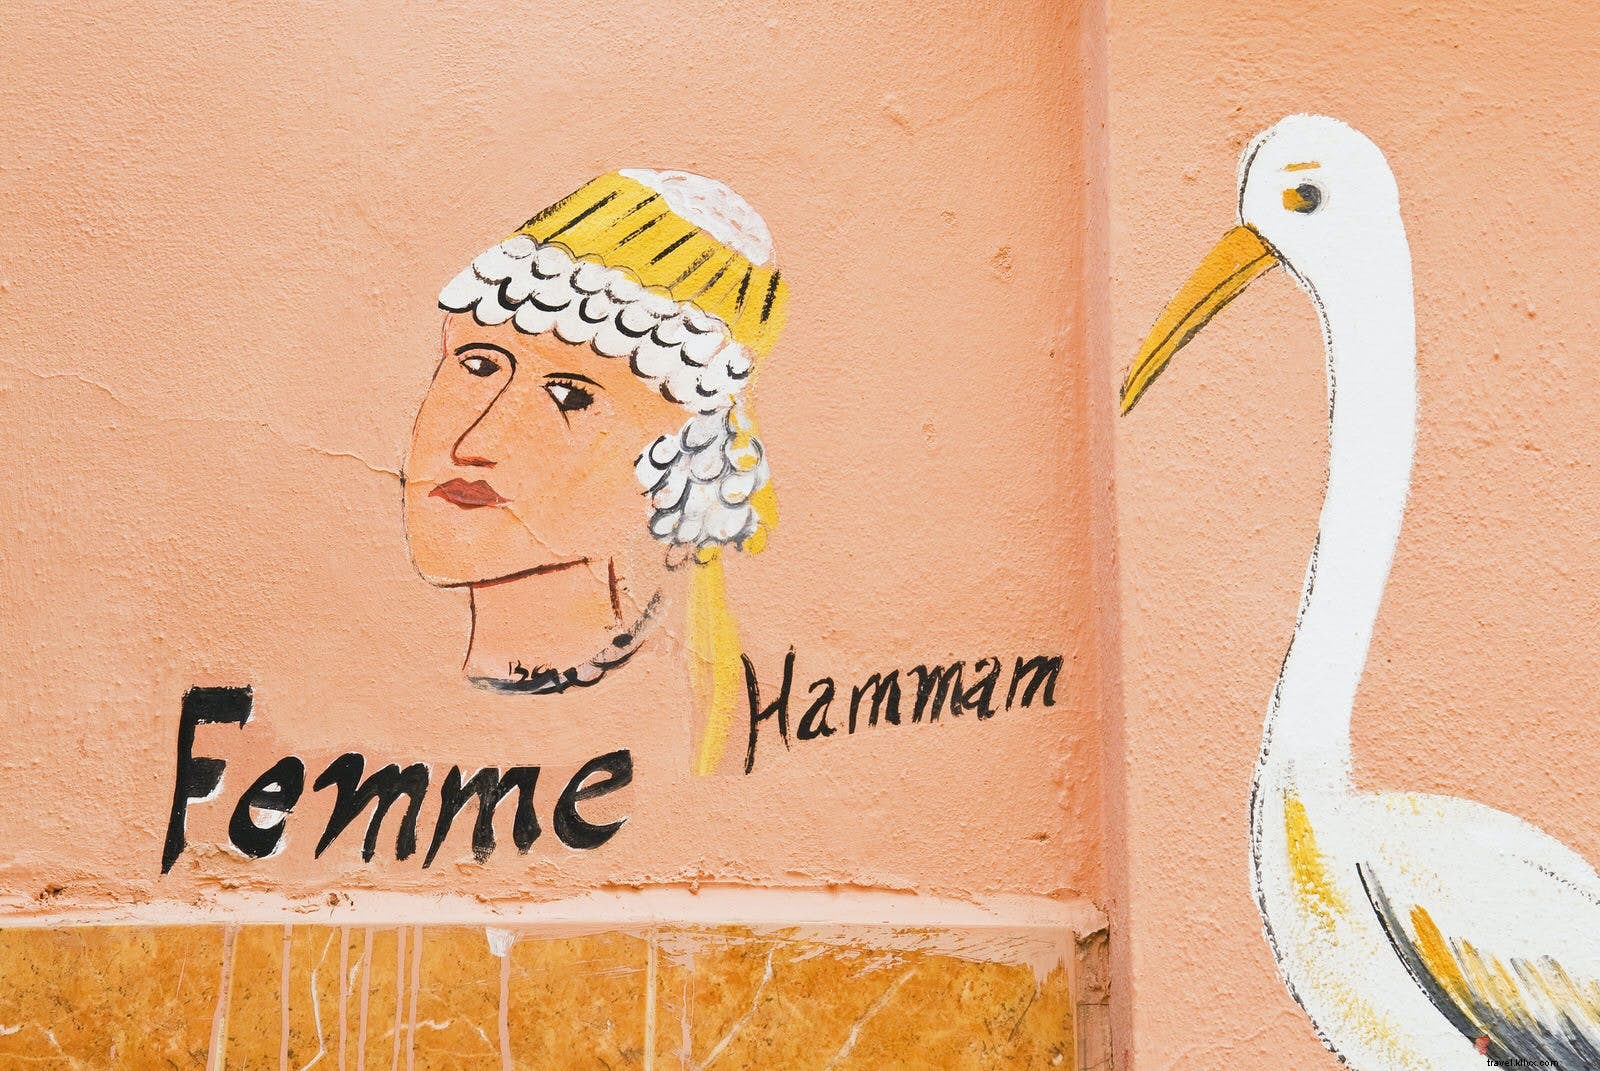 Comment hammam :trucs et astuces pour les meilleurs spas de Marrakech 